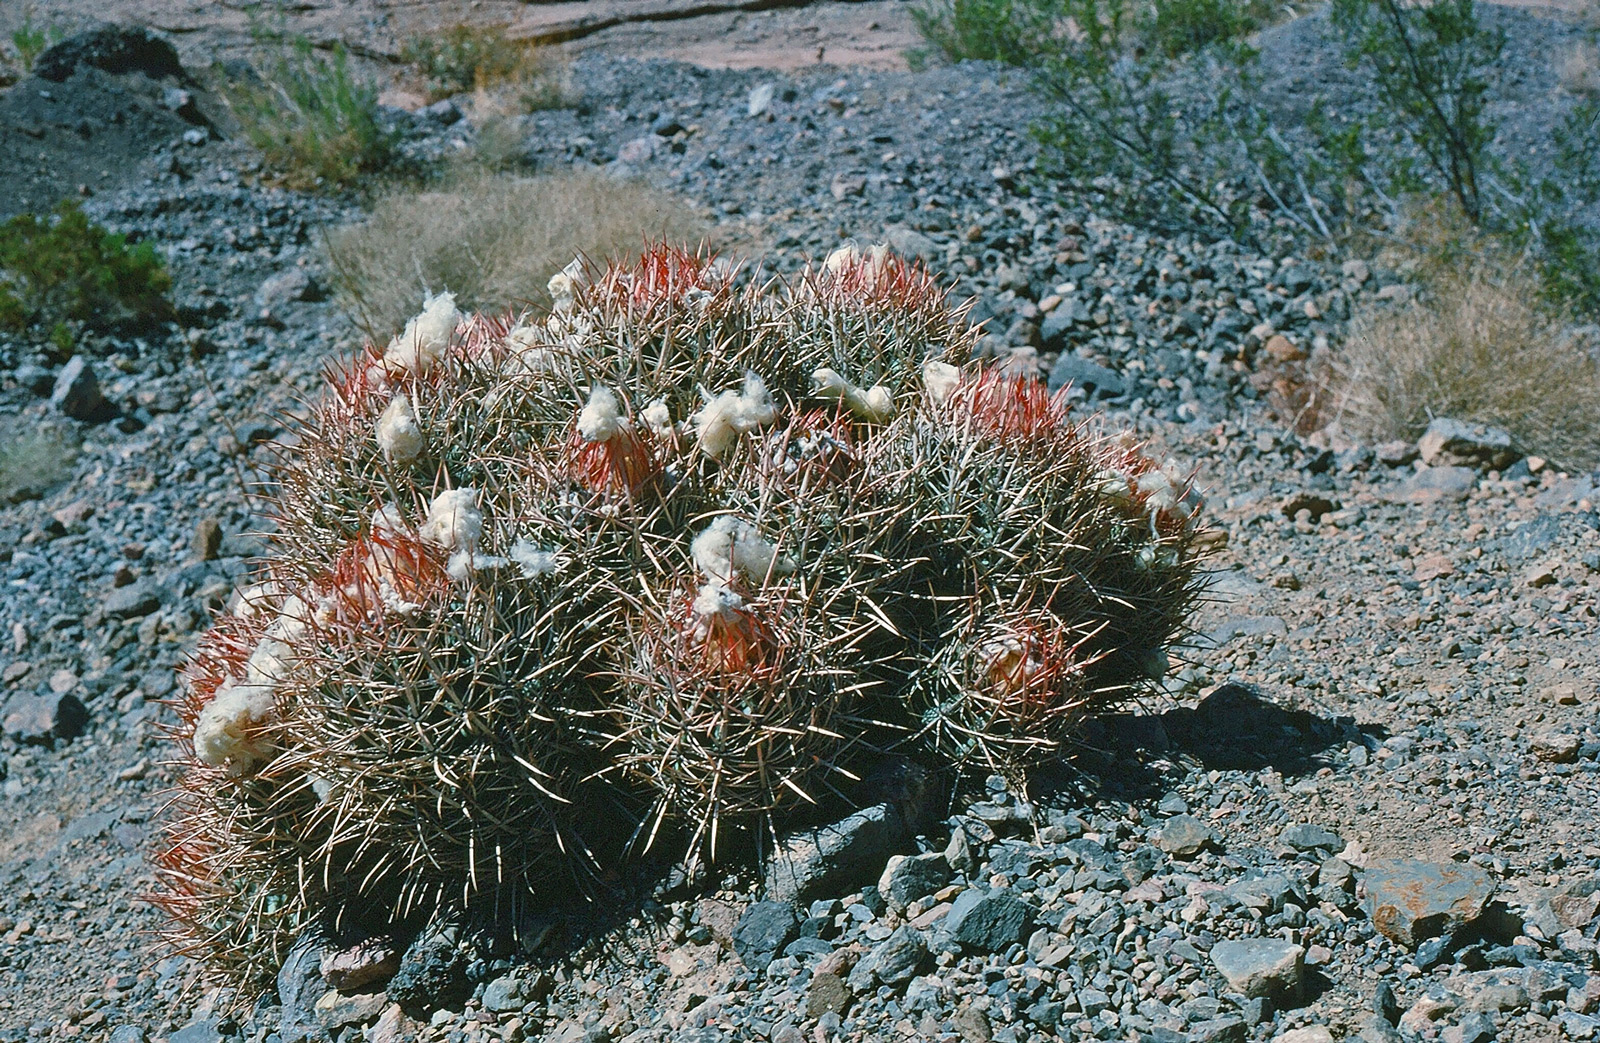 Cottontop Cactus